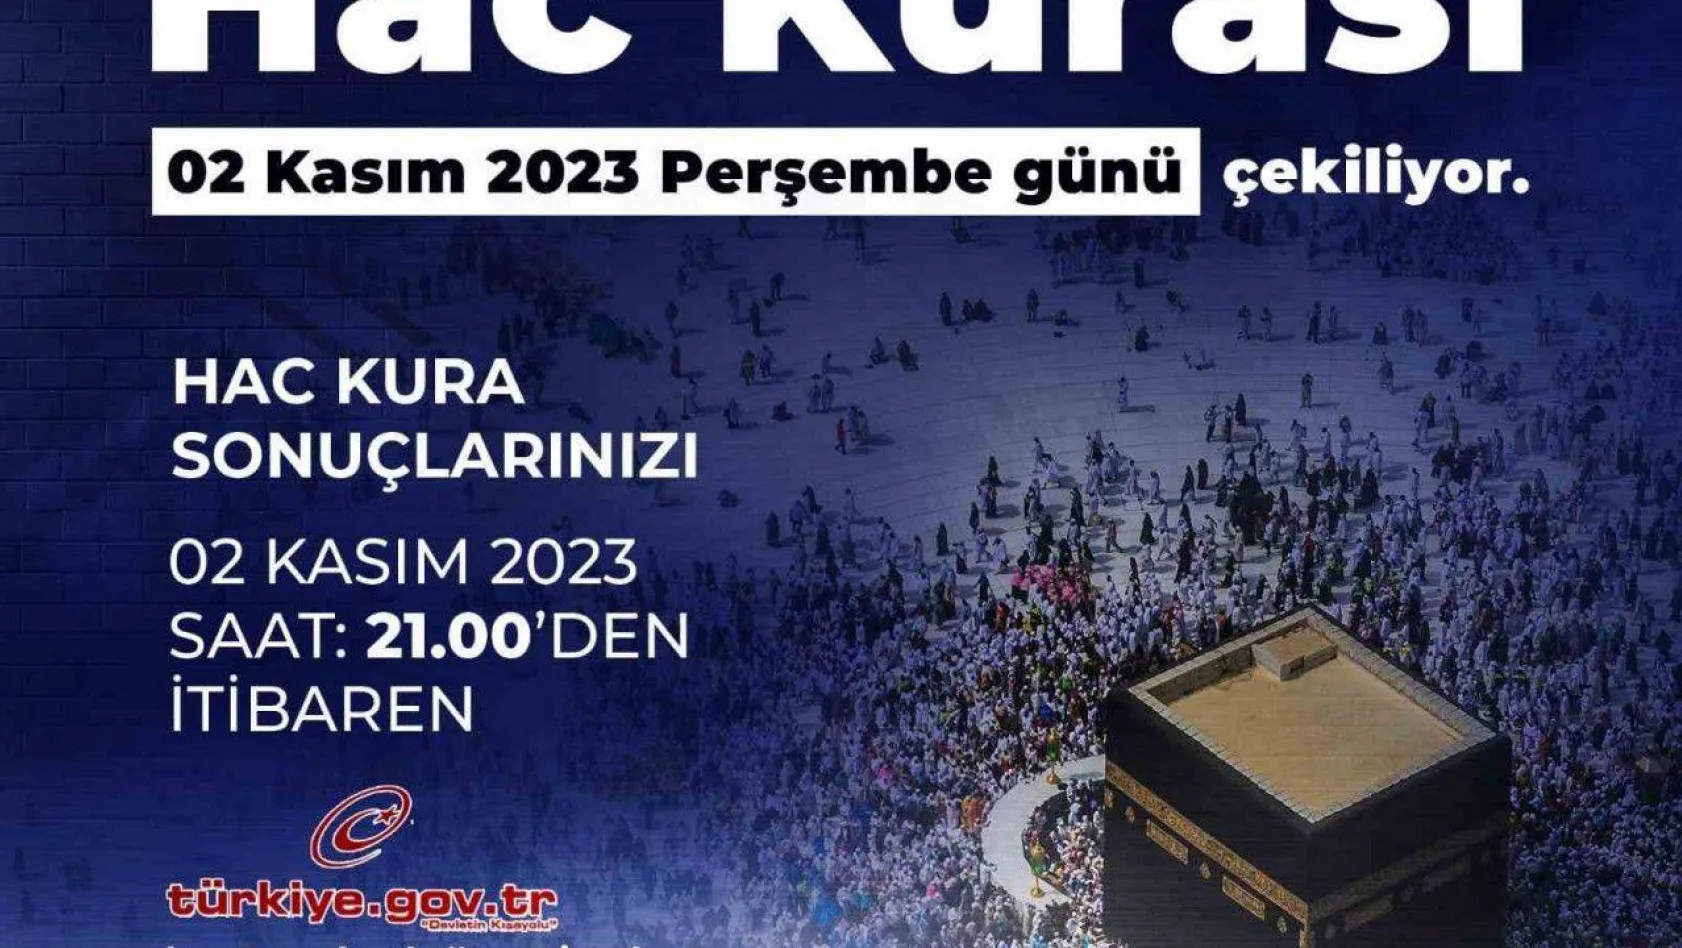 Diyanet İşleri Başkanı Erbaş: '2024 Hac kurasını 2 Kasım'da Diyanet İşleri Başkanlığınca gerçekleştireceğiz'